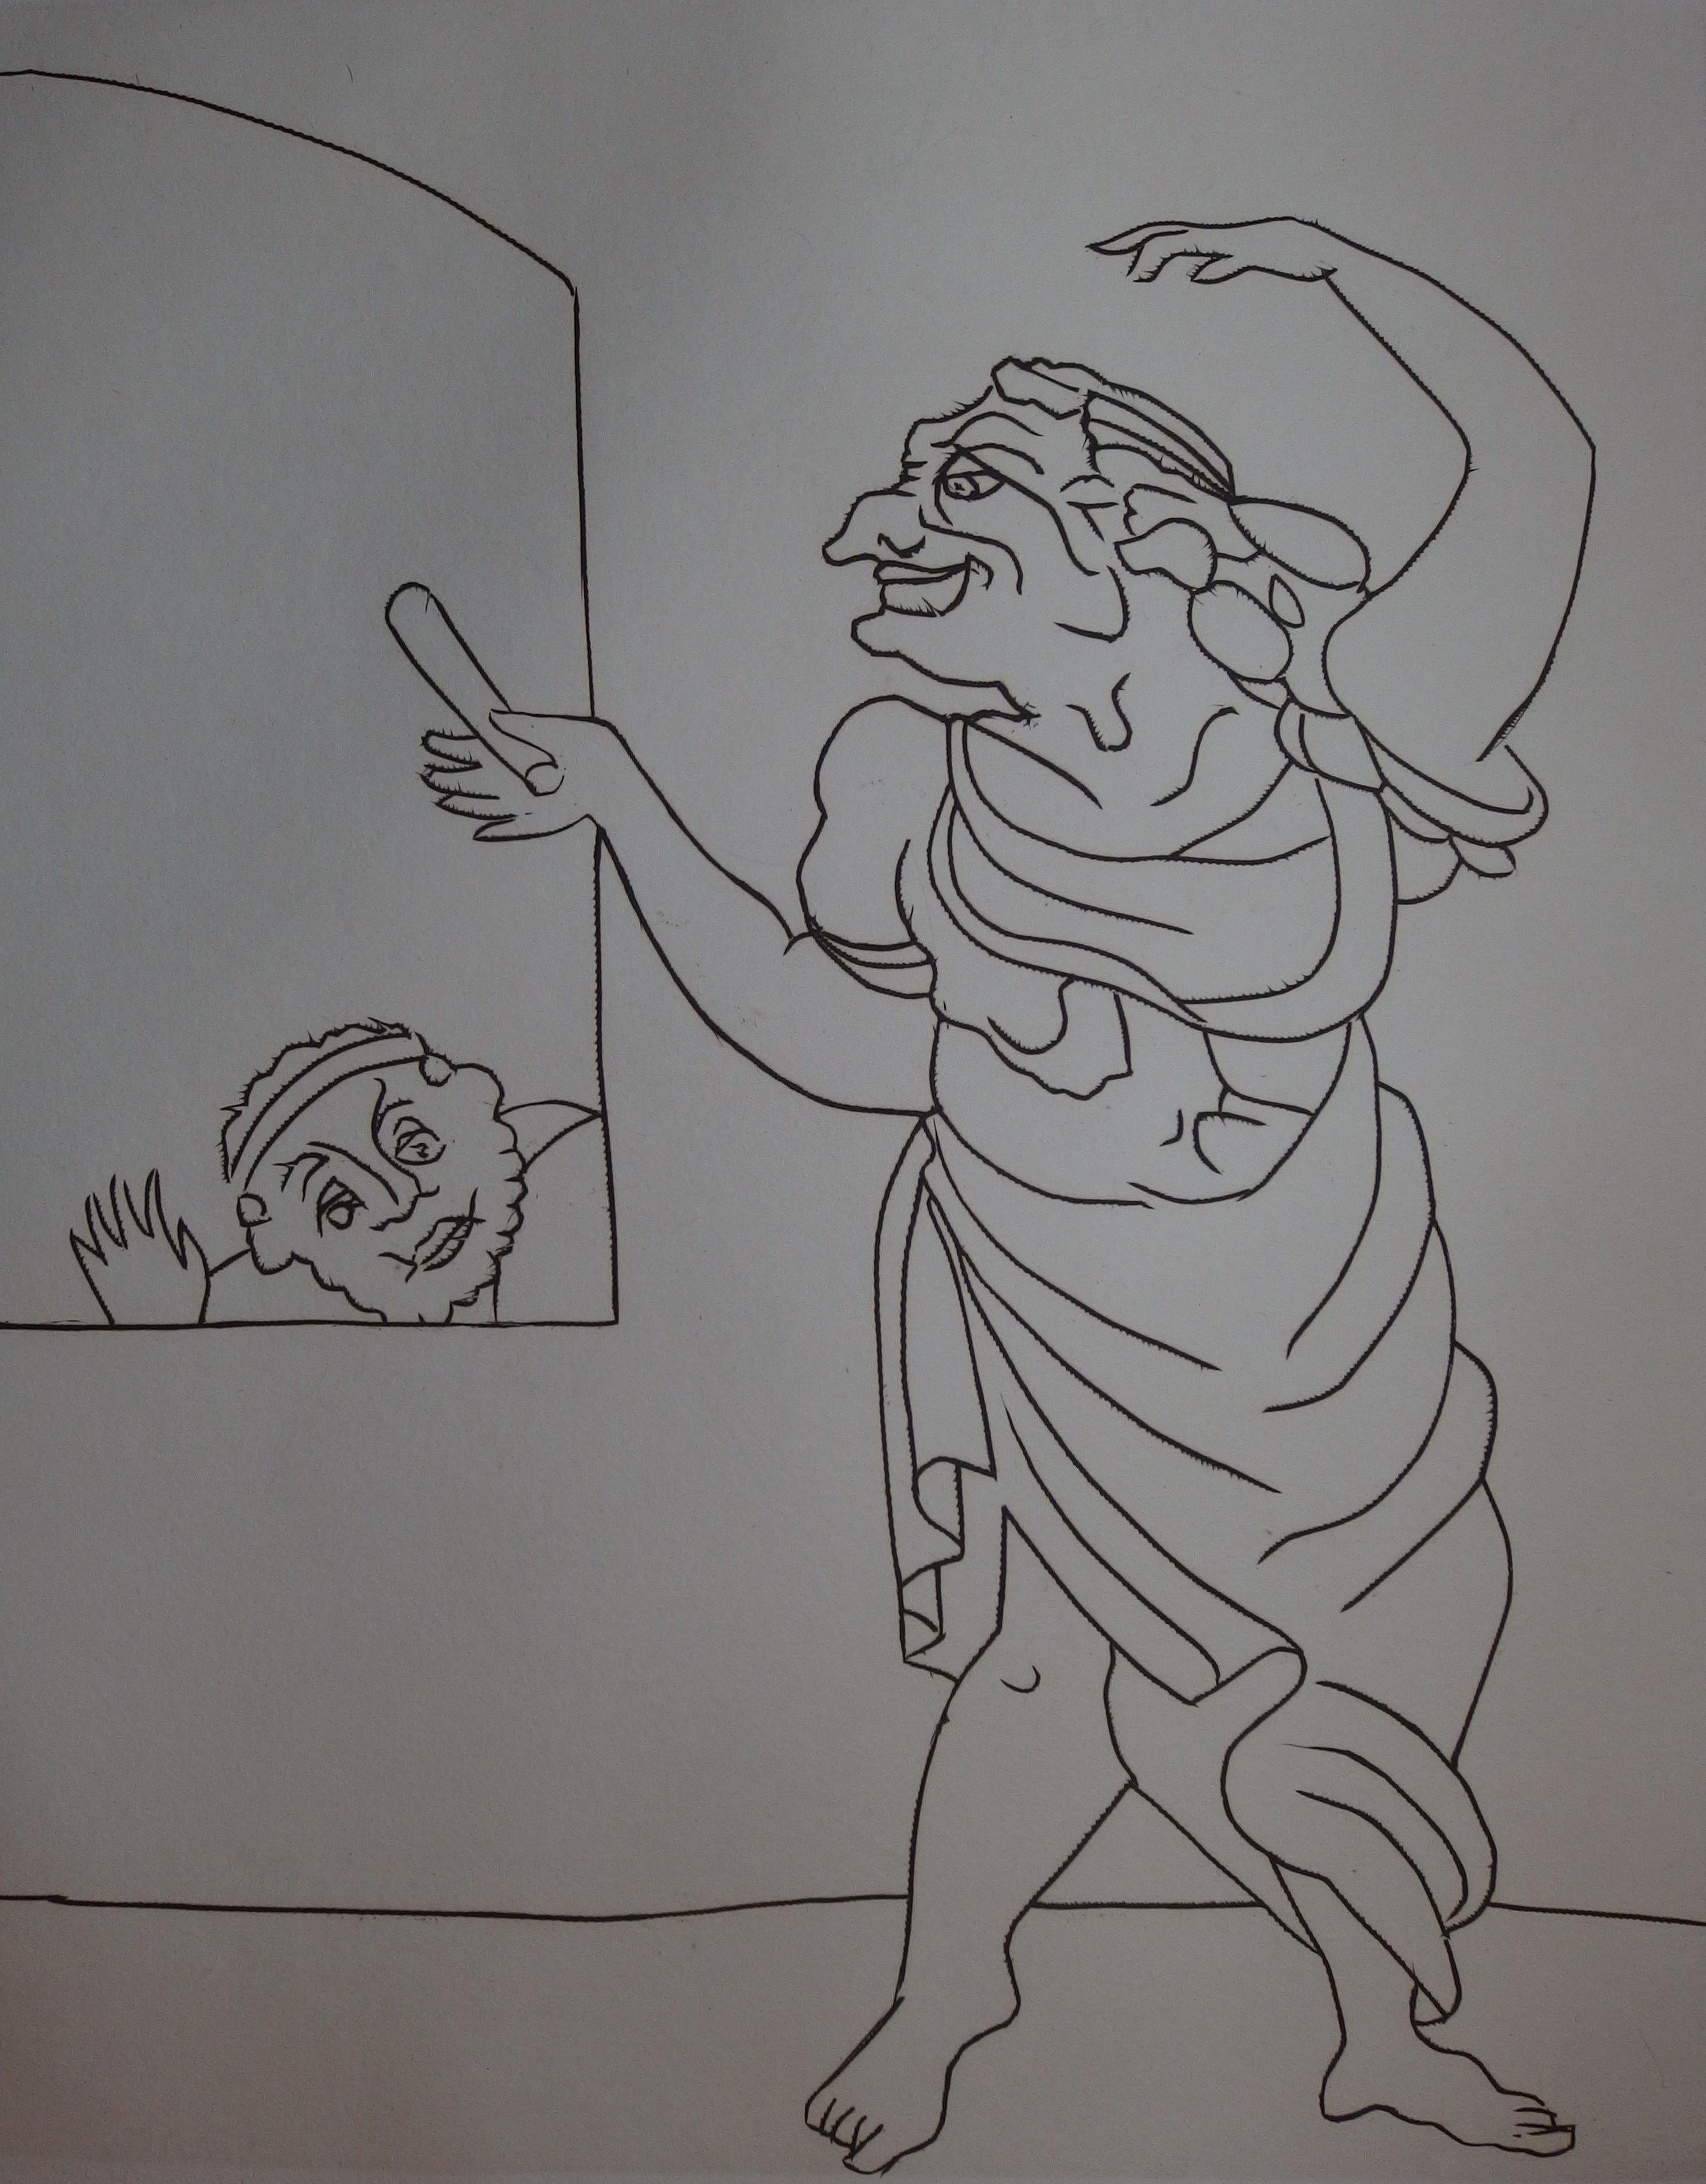 muneshwara drawing